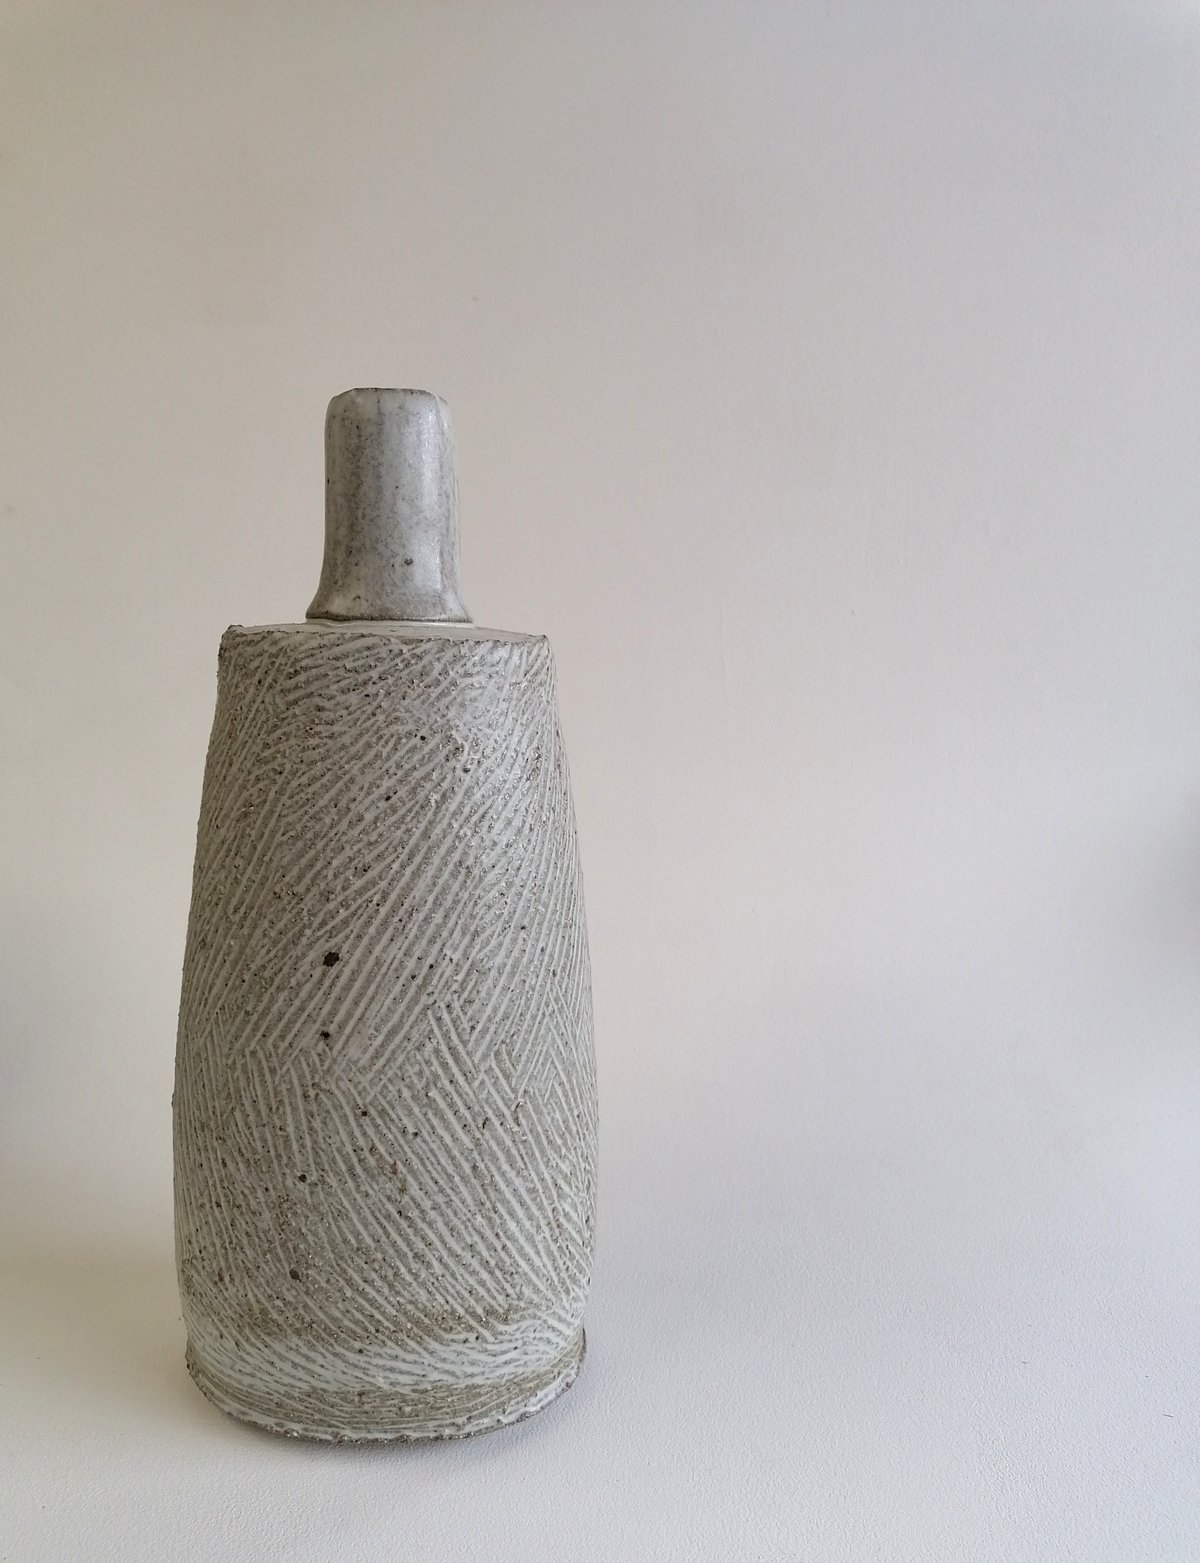 Image of Textured Bottle Vase. Sale